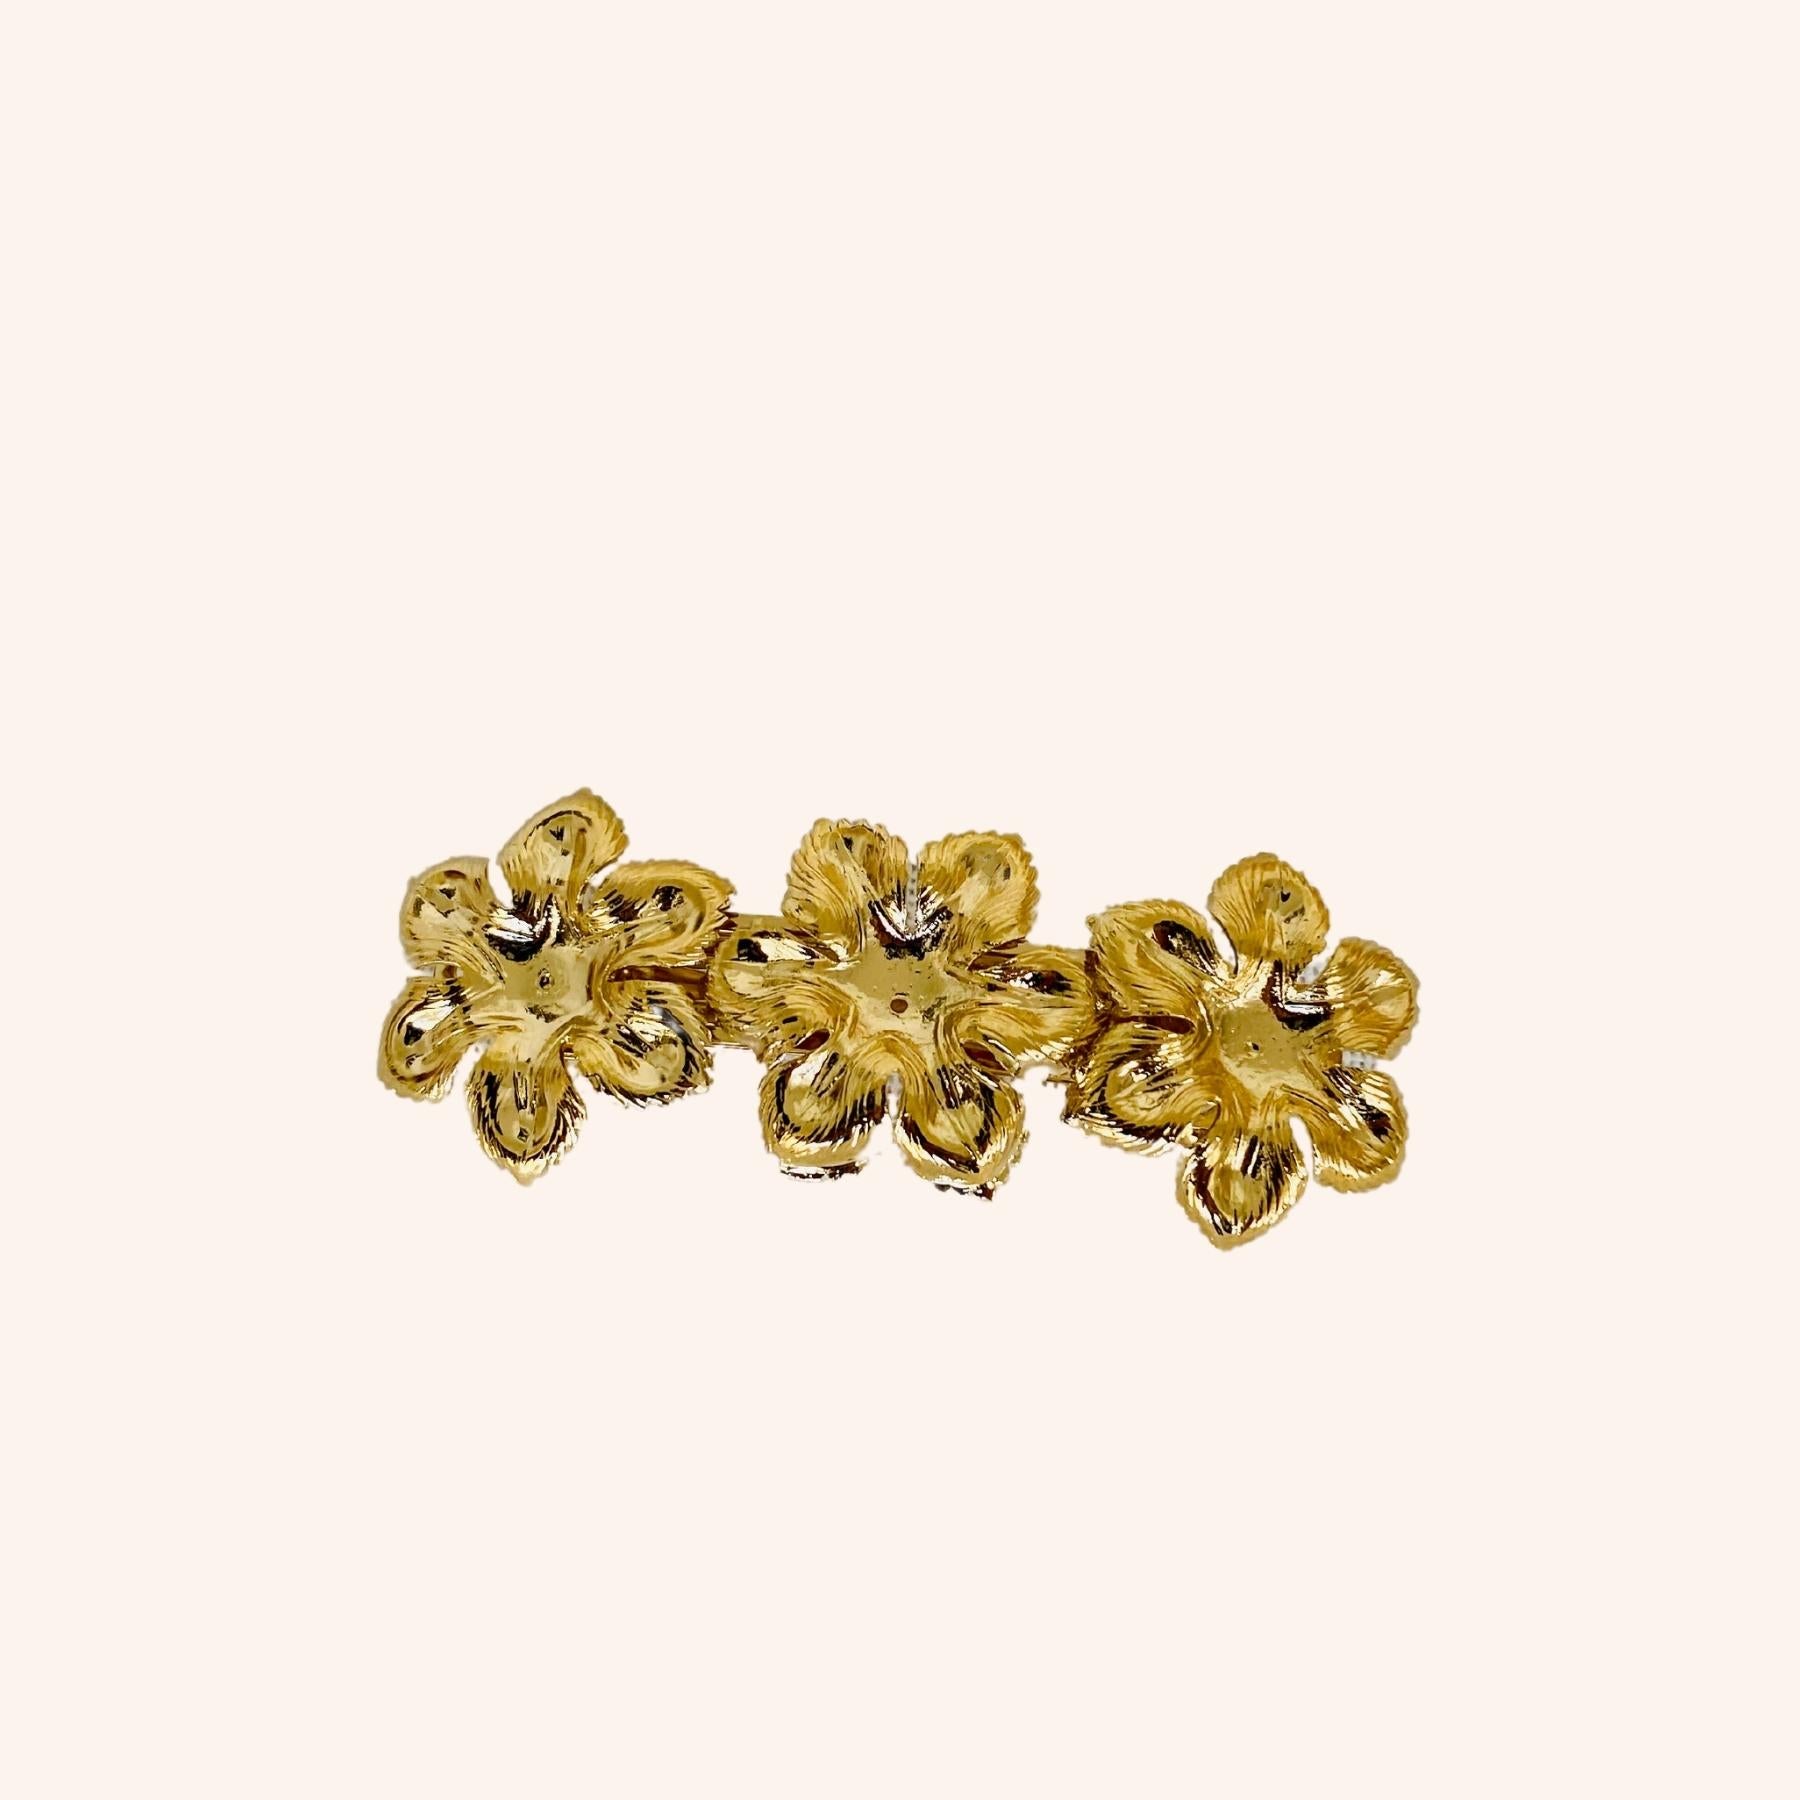 Petite barrette cheveux en métal dorée 3 fleurs accessoire original et chic